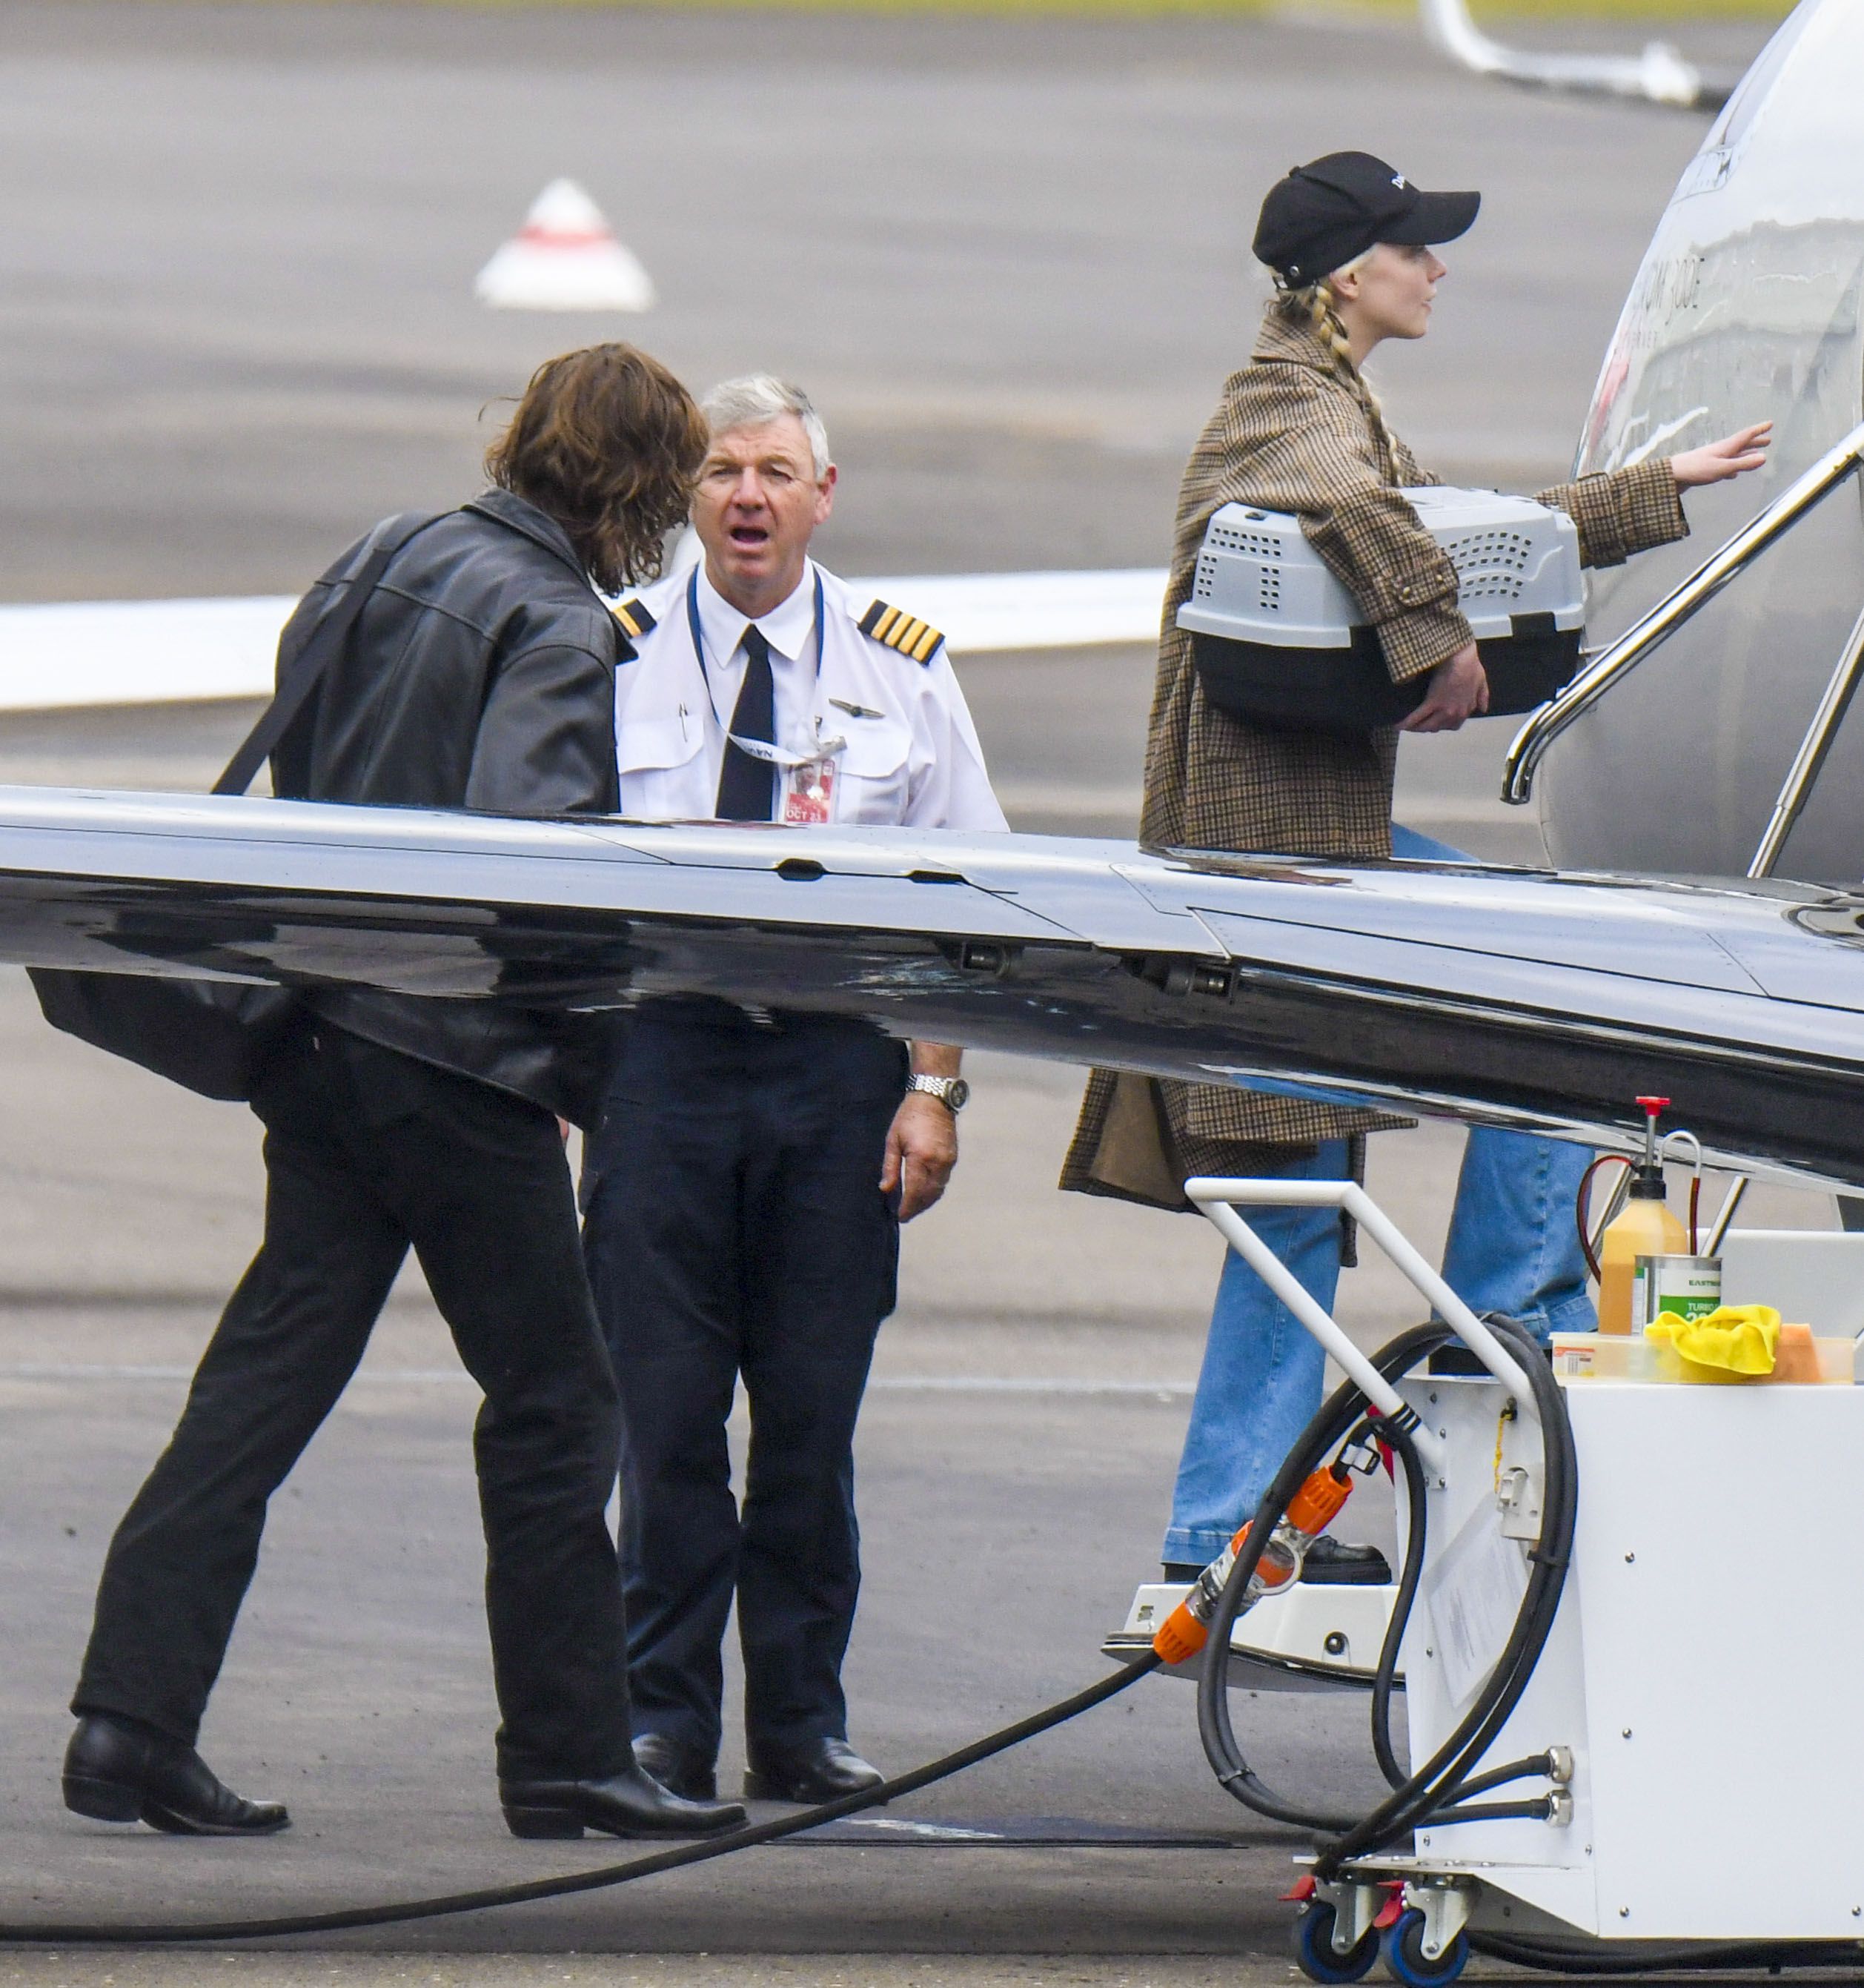 Anya Taylor-Joy viajó en un jet privado a Broken Hill para el rodaje de "Furiosa", la precuela de Mad Max. La actriz fue fotografiada cuando subía al avión cargando a su mascota, y acompañada por su novio, el músico Malcolm McCrae